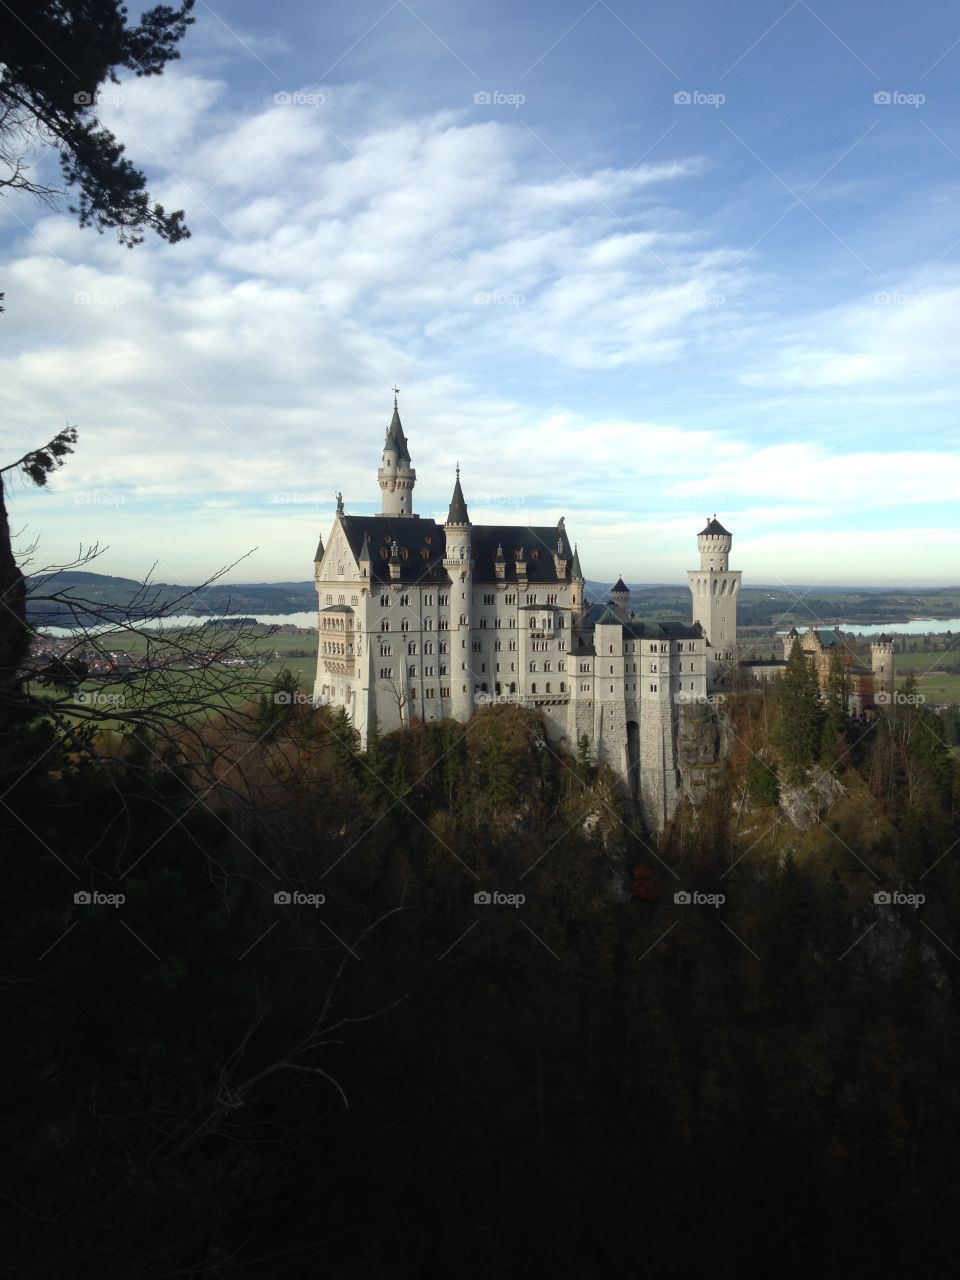 A castle in German 